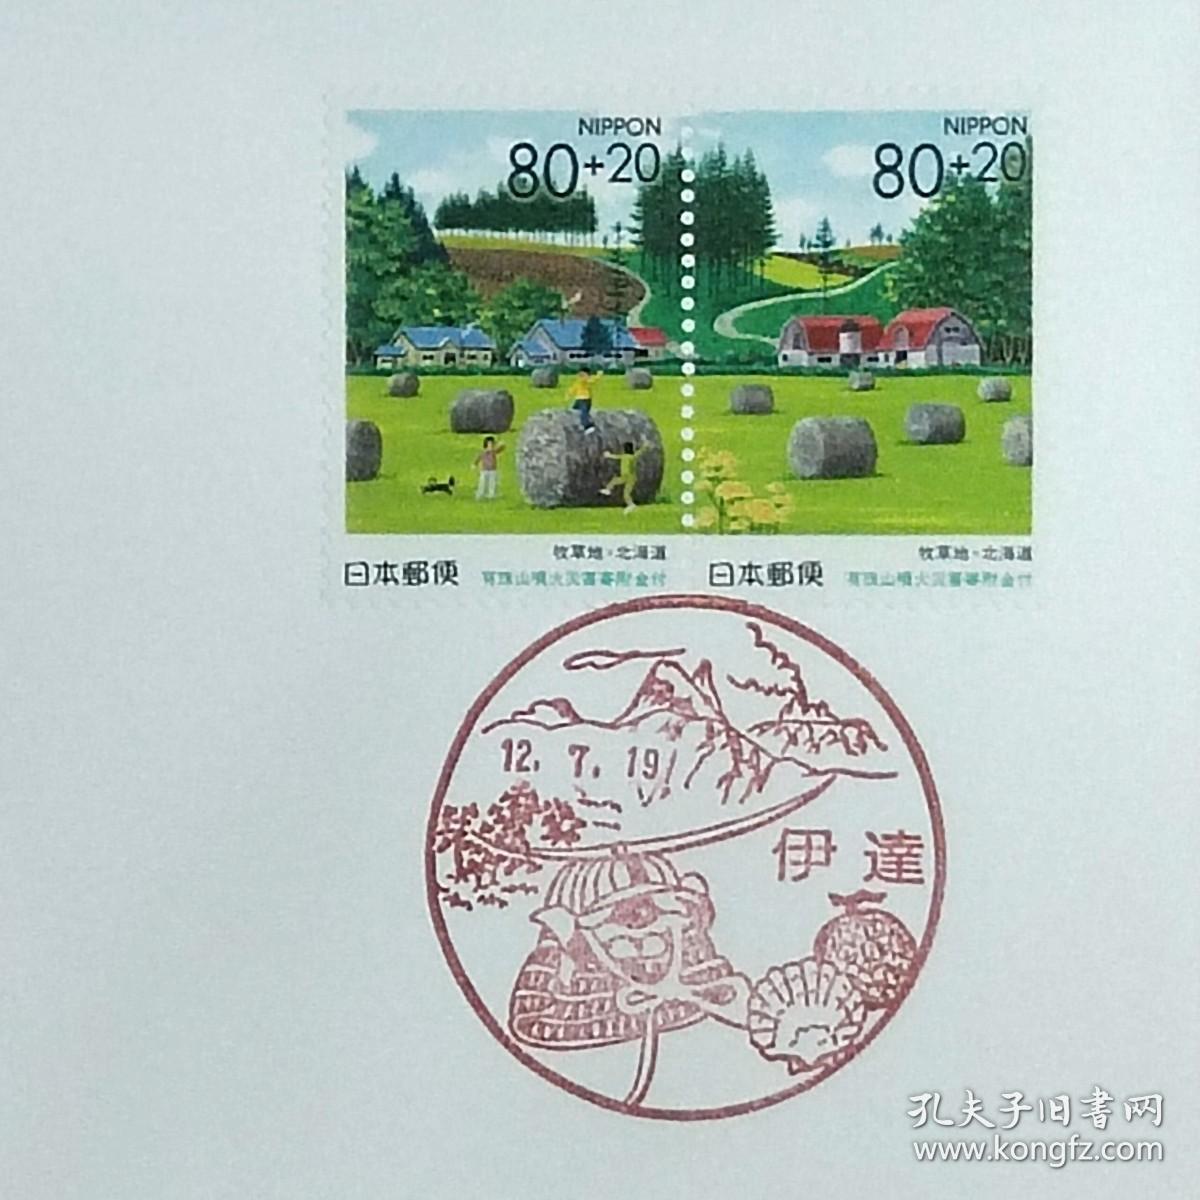 日本首日封：2000年日本地方邮政北海道（北海道-26）发行《北方大地Ⅱ（第二集）》首日封共2枚（日本邮趣协会版）（盖“北方大地Ⅱ”纪念邮戳）